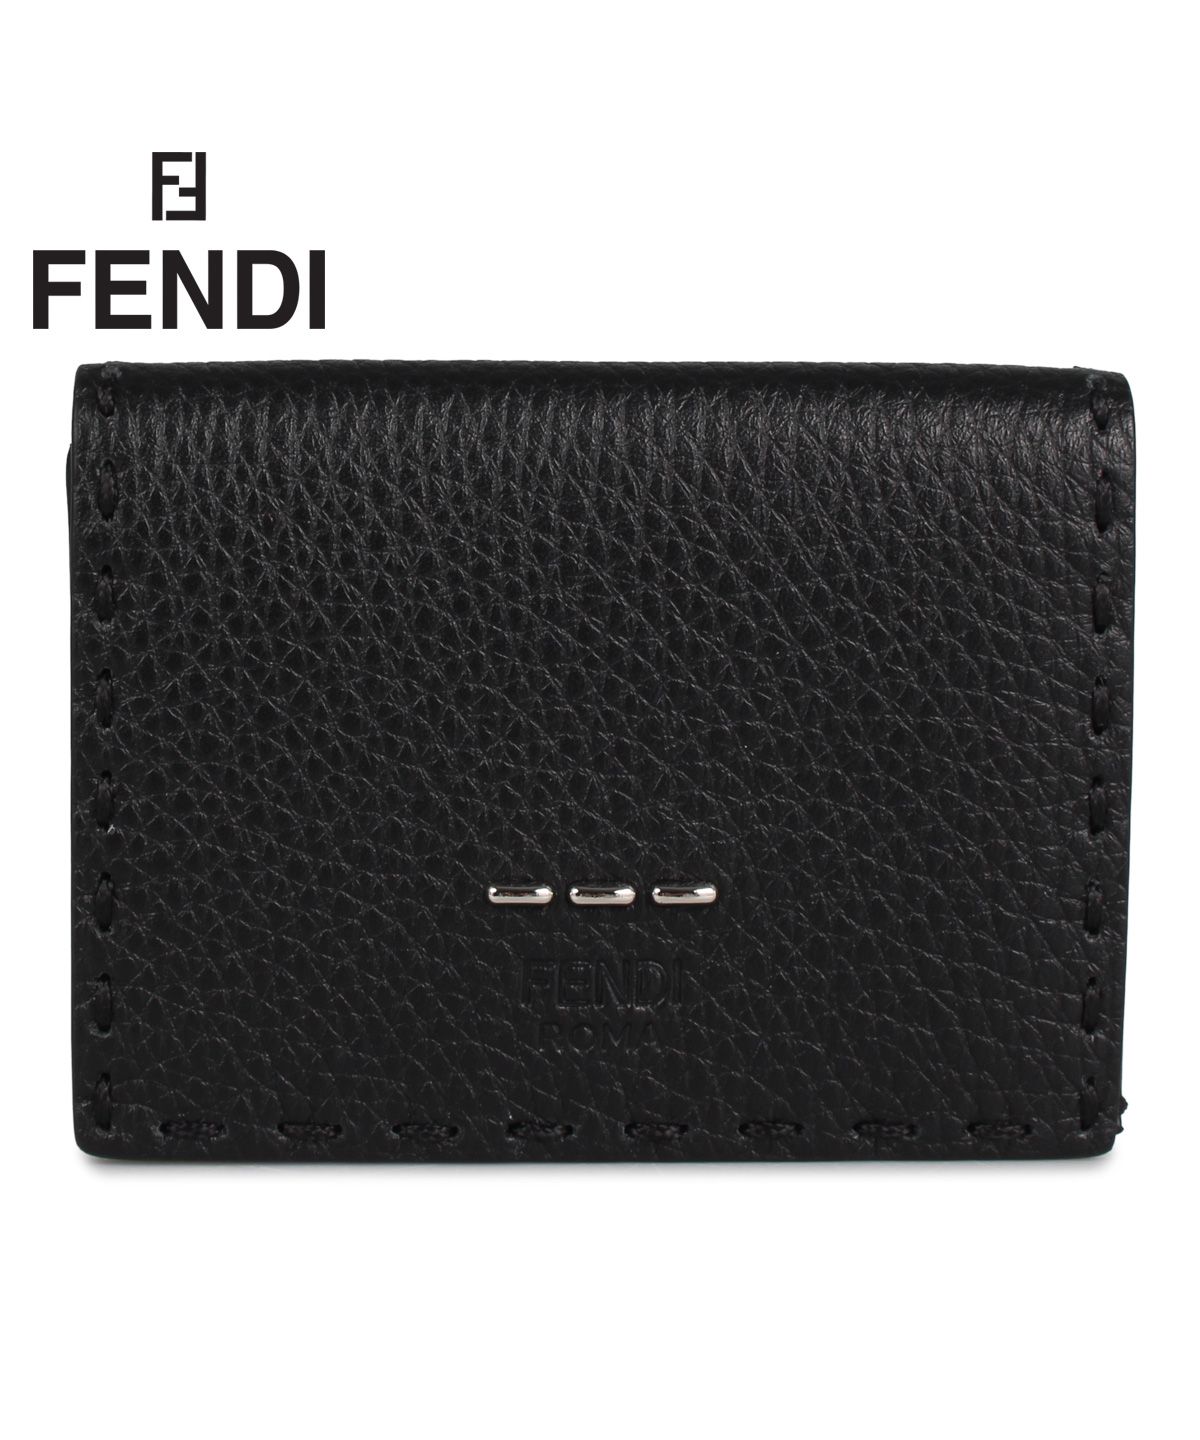 フェンディ FENDI 財布 三つ折り メンズ レディース イタリア製 SLLERIA ROMAN WALLET ブラック 黒 7M0280O7N